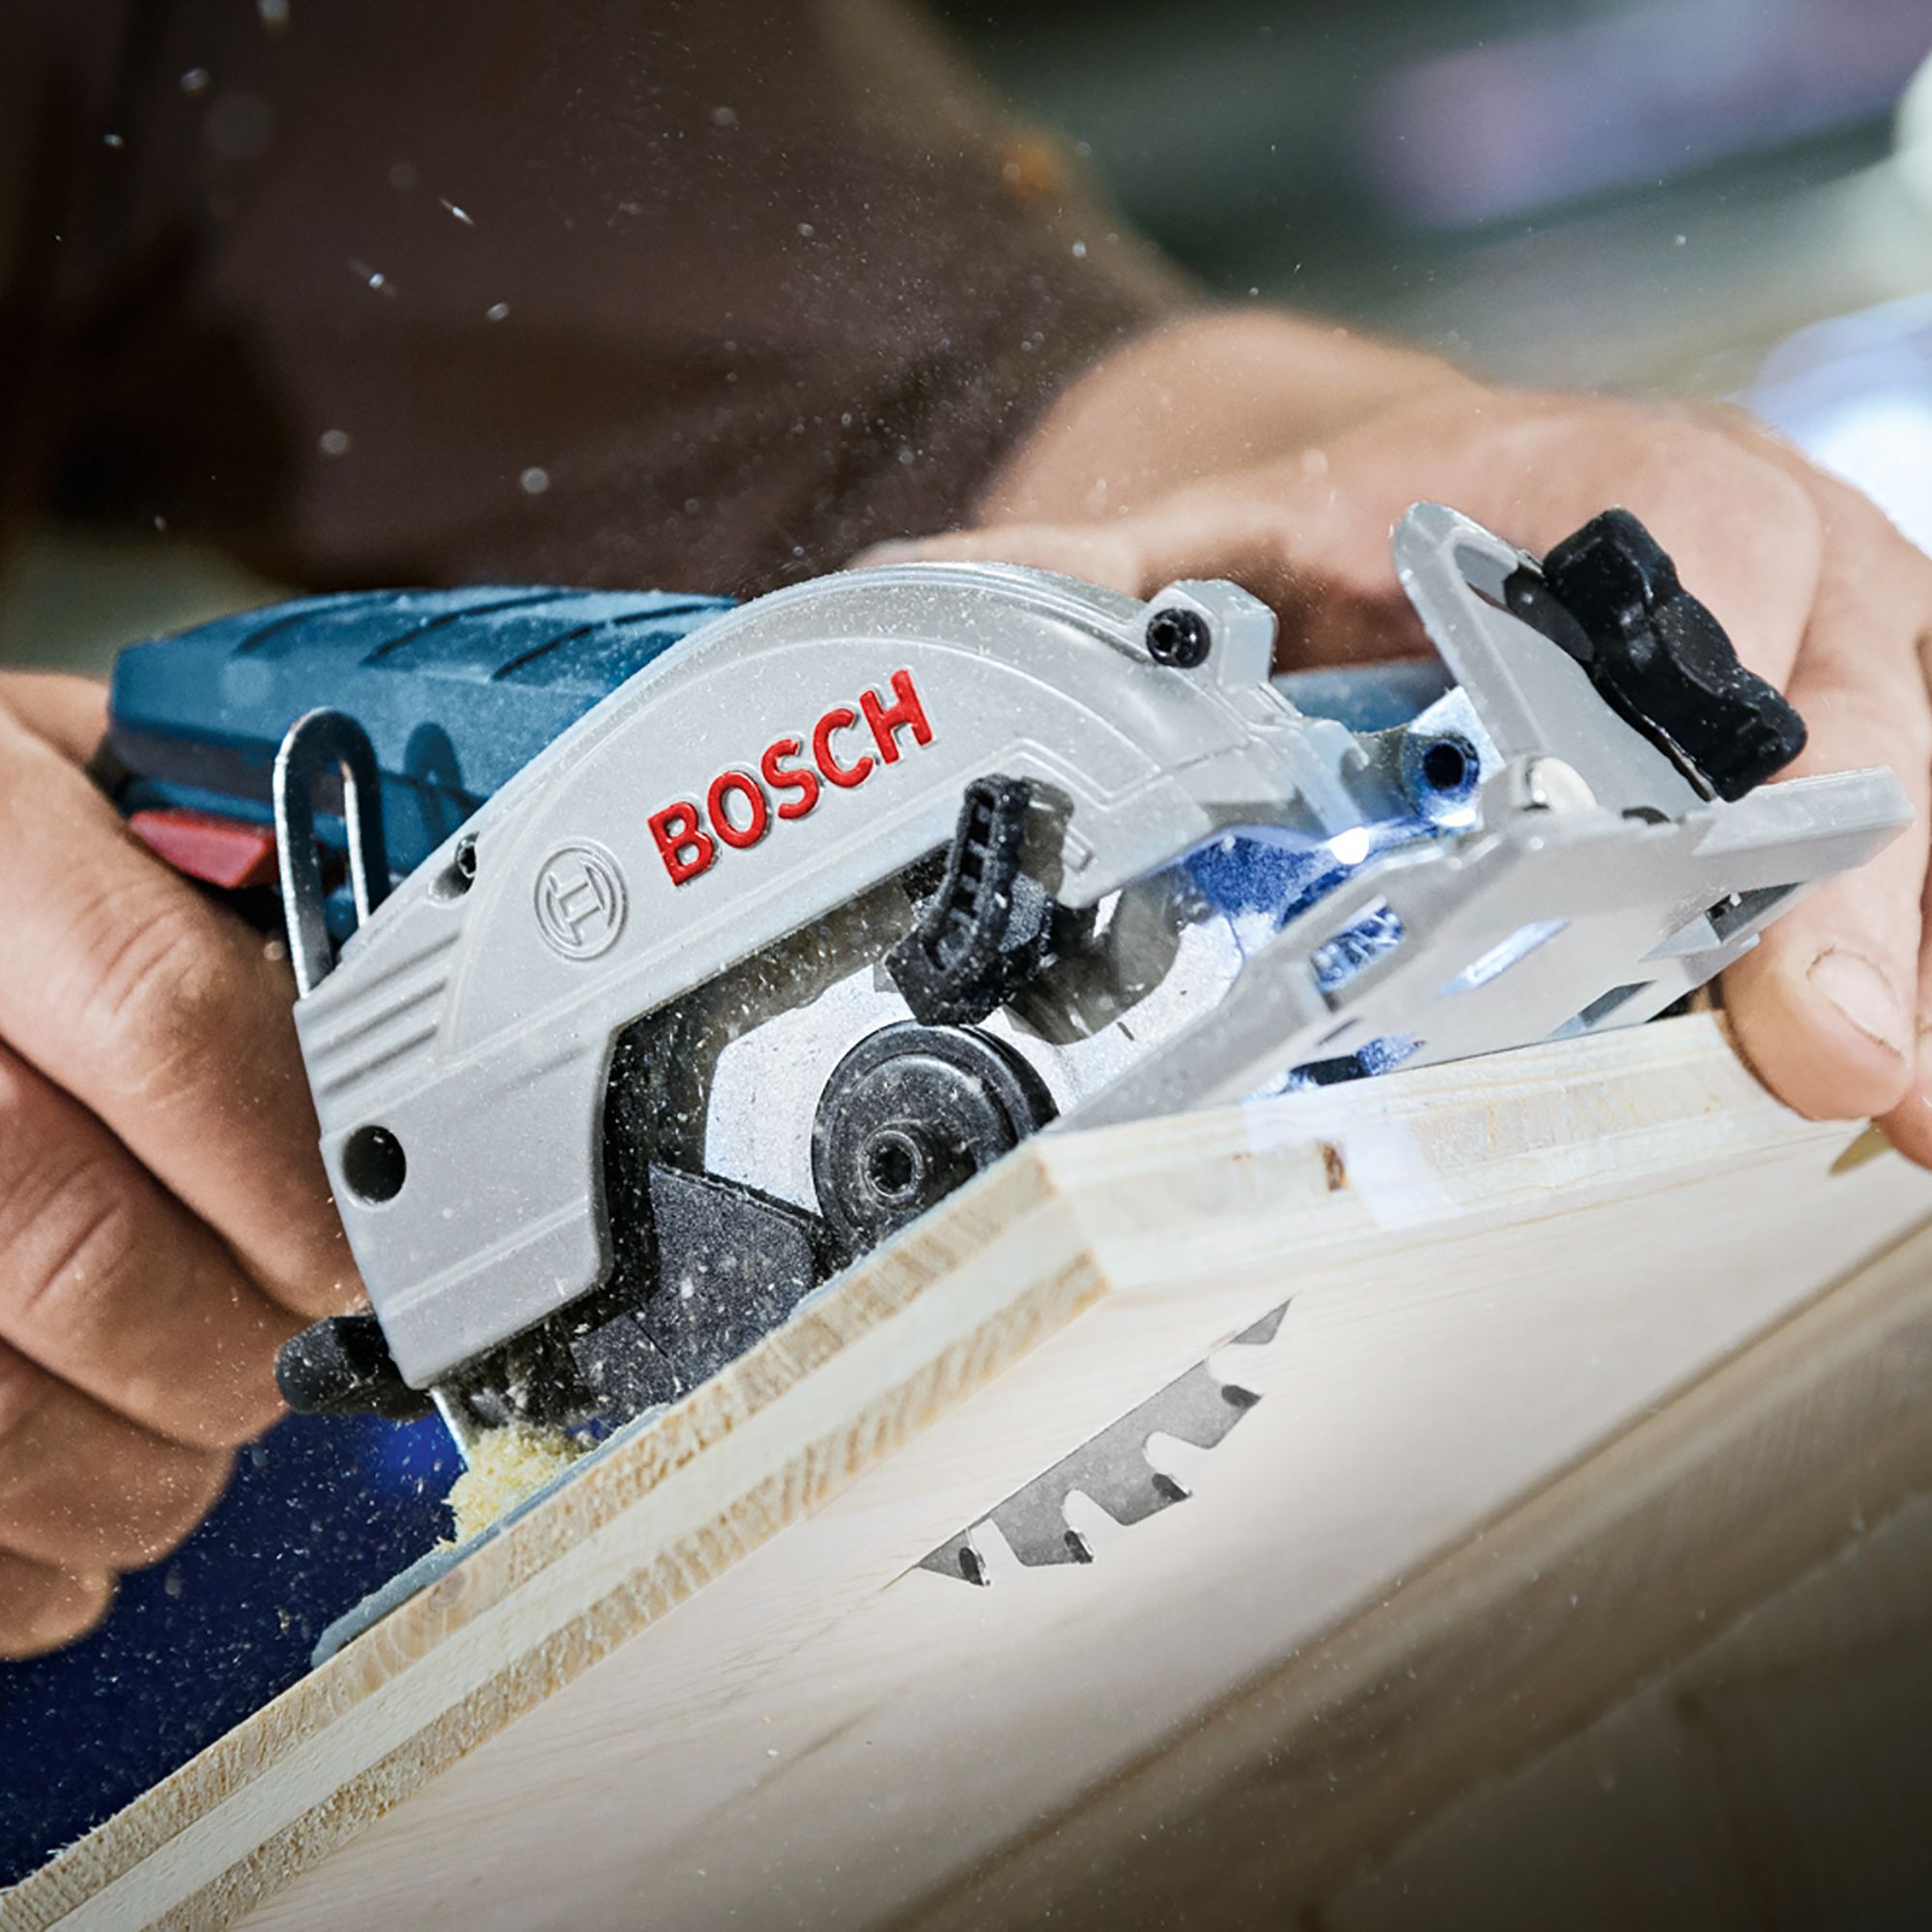 Bosch 12V 85mm Cordless Circular saw (Bare Tool) - GKS 12V 26